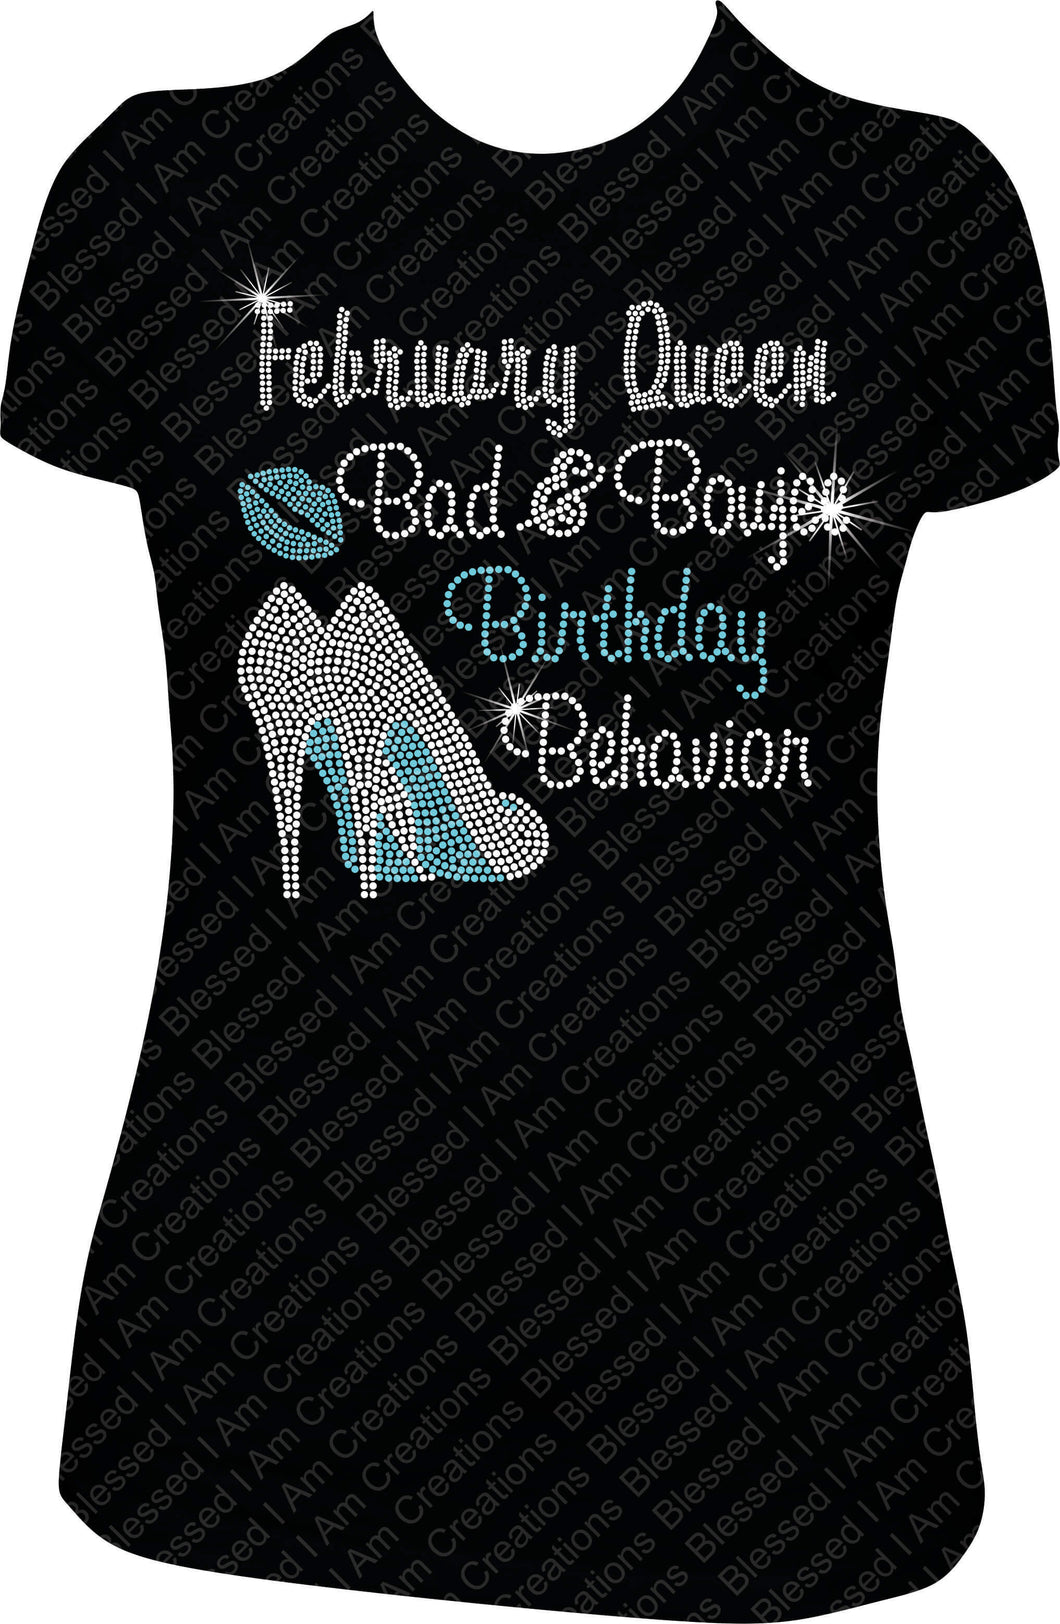 February Queen Bad and Boujee Birthday Behavior Rhinestone Shirt Bling Shirt